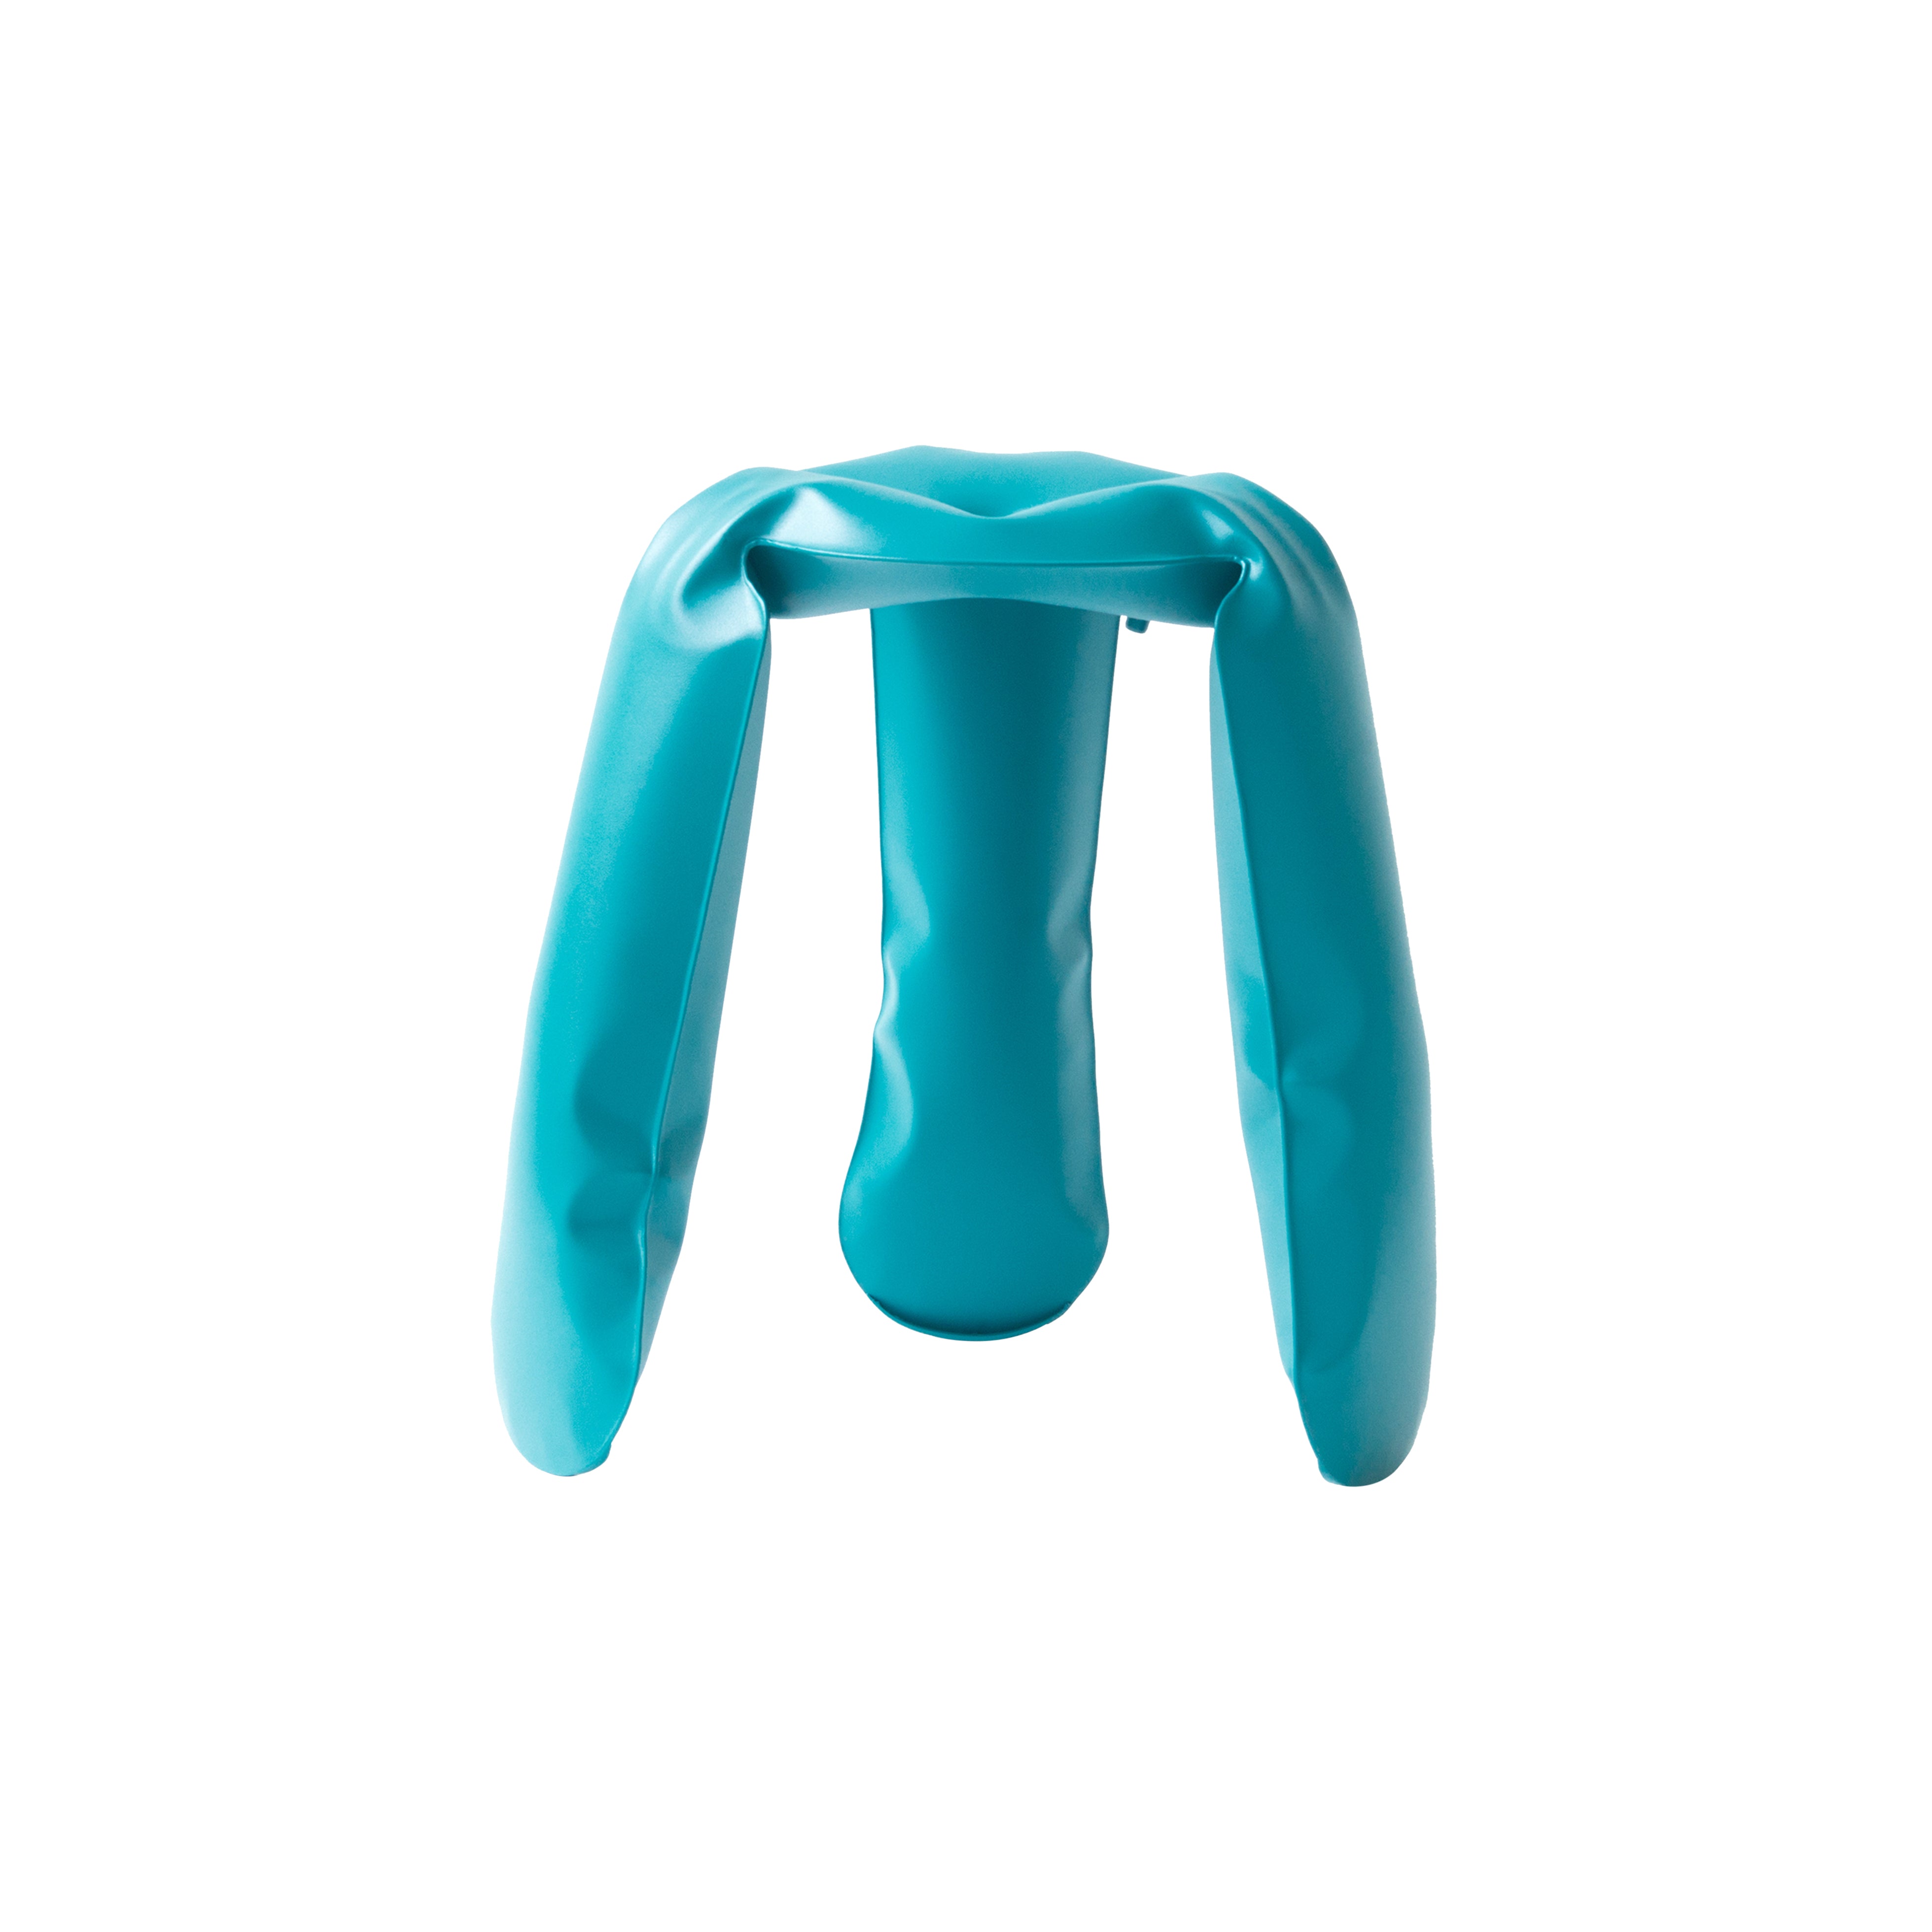 Plopp Metal Mini Footstool: Water Blue Carbon Steel